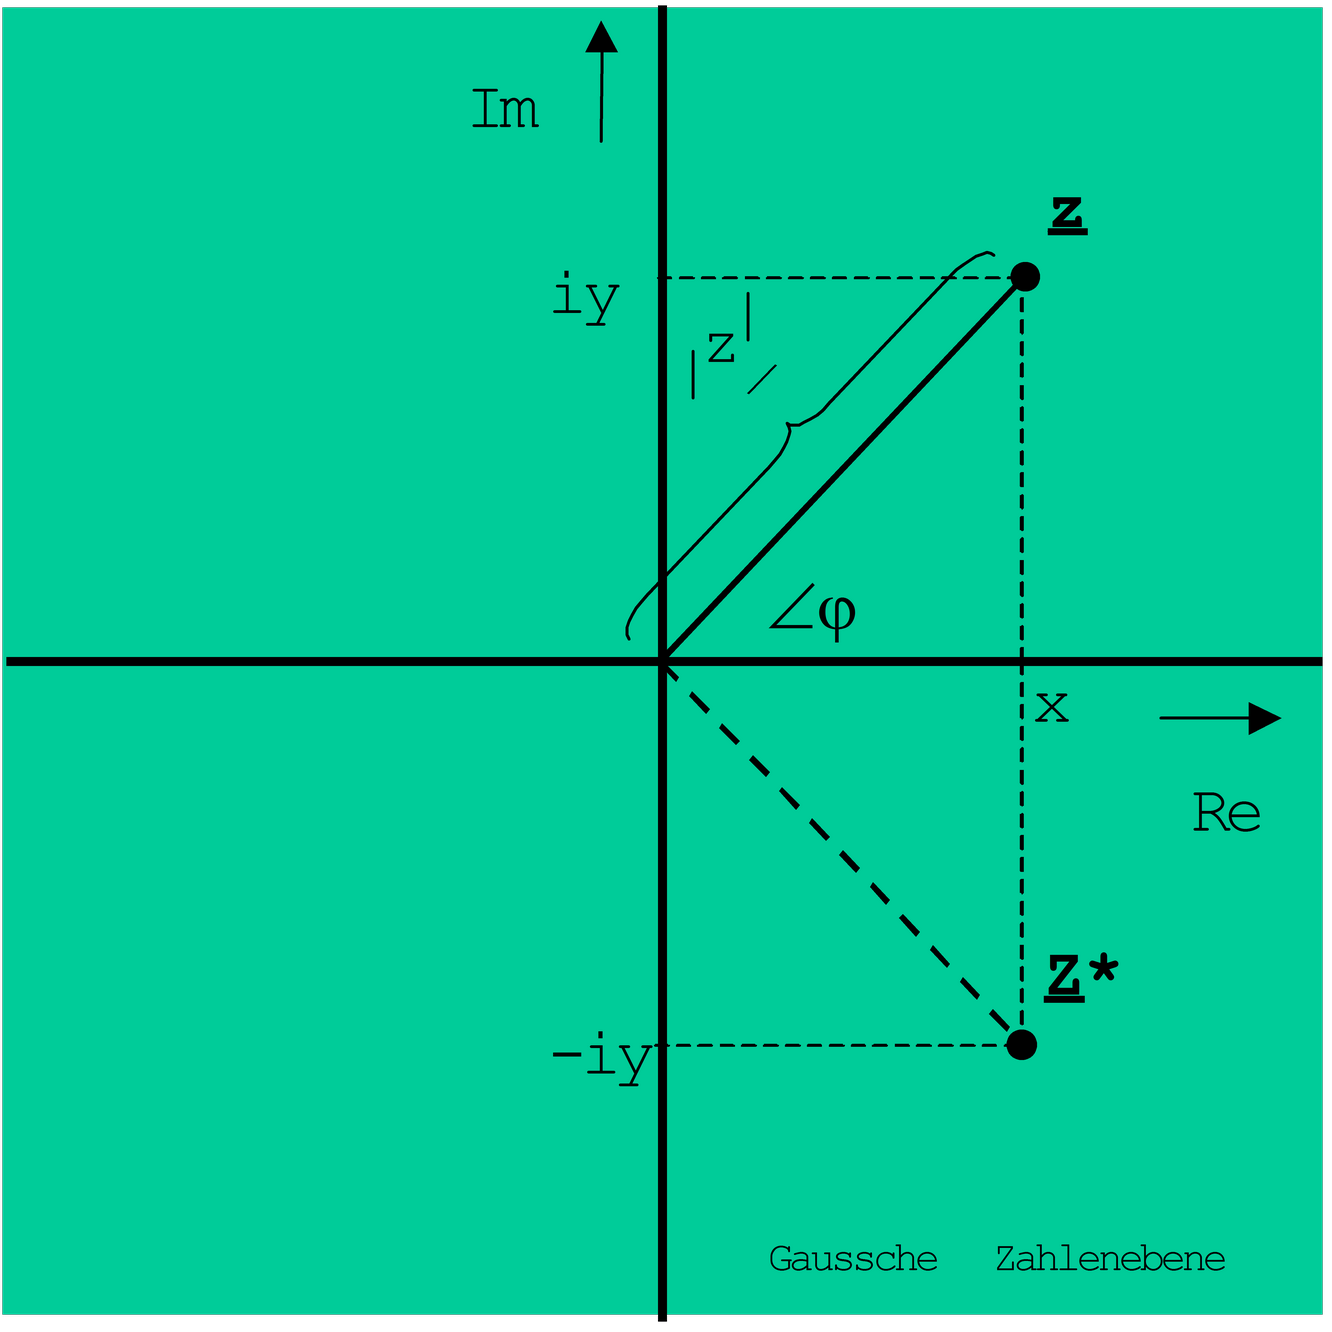 Gaussche Zahlenebene (Koordinatensystem)